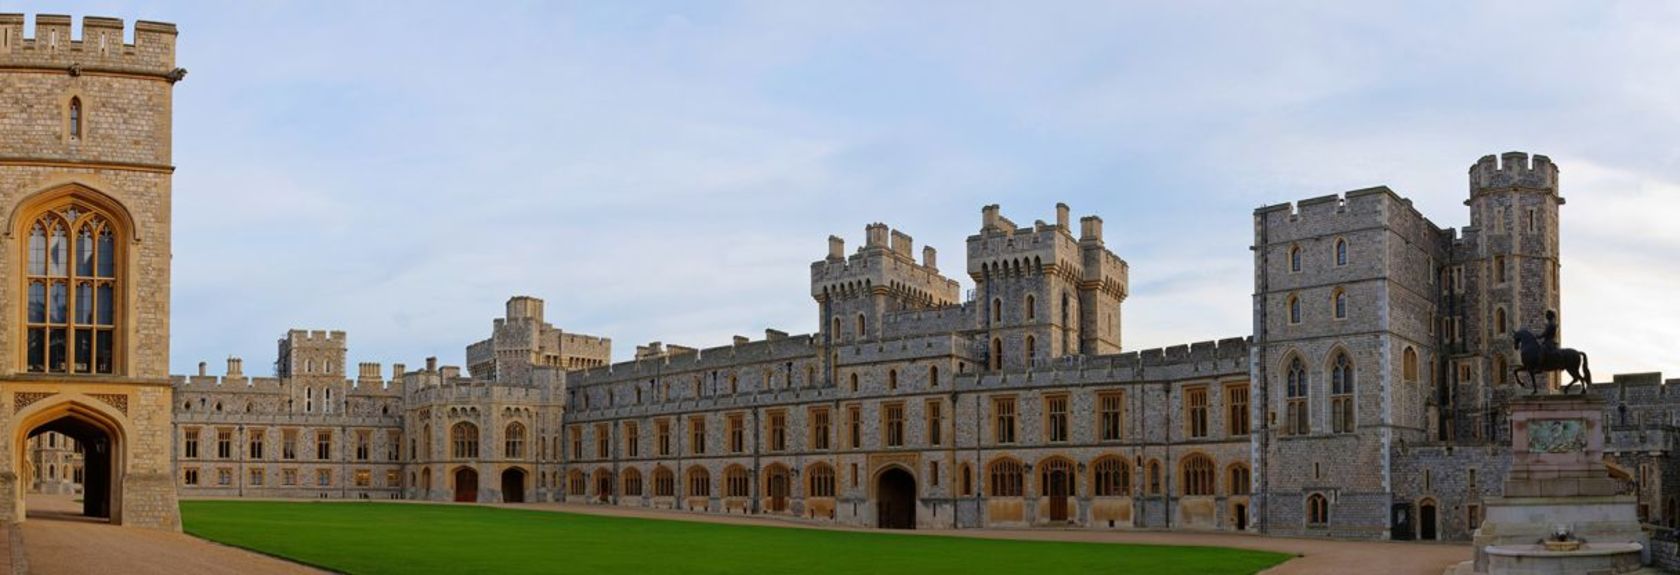 Visite a bela cidade histórica de Windsor e Windsor Castle e descubra o lugar onde o Príncipe Harry e Meghan Markle deram um ao outro a palavra de sim durante seu casamento de conto de fadas em 19 de maio de 2018